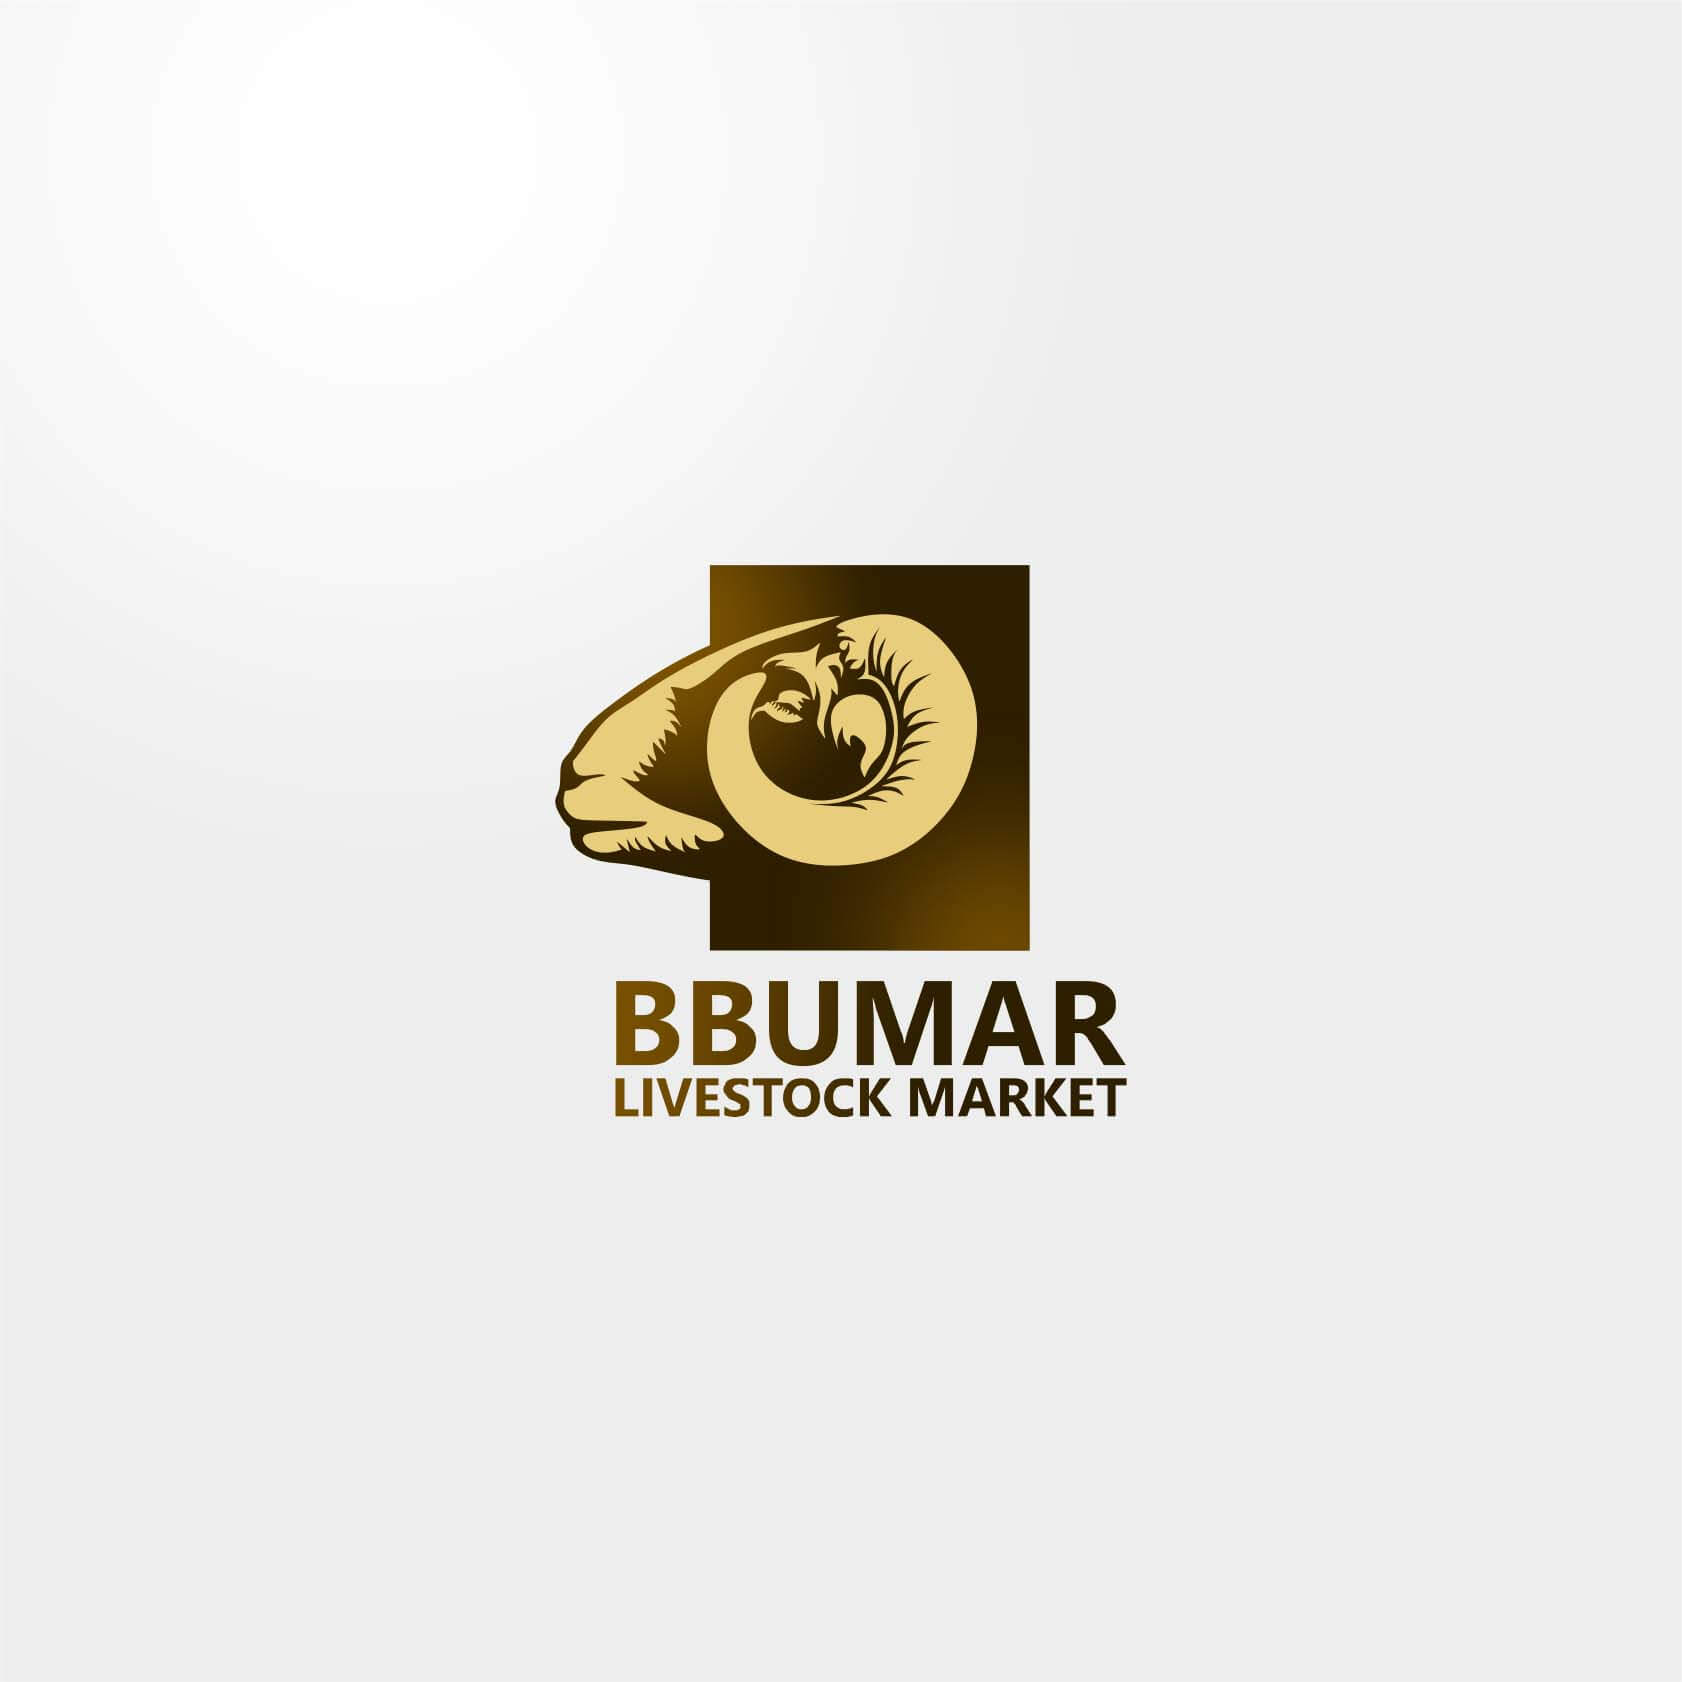 BBUMAR - Logo Design For A Livestock Market